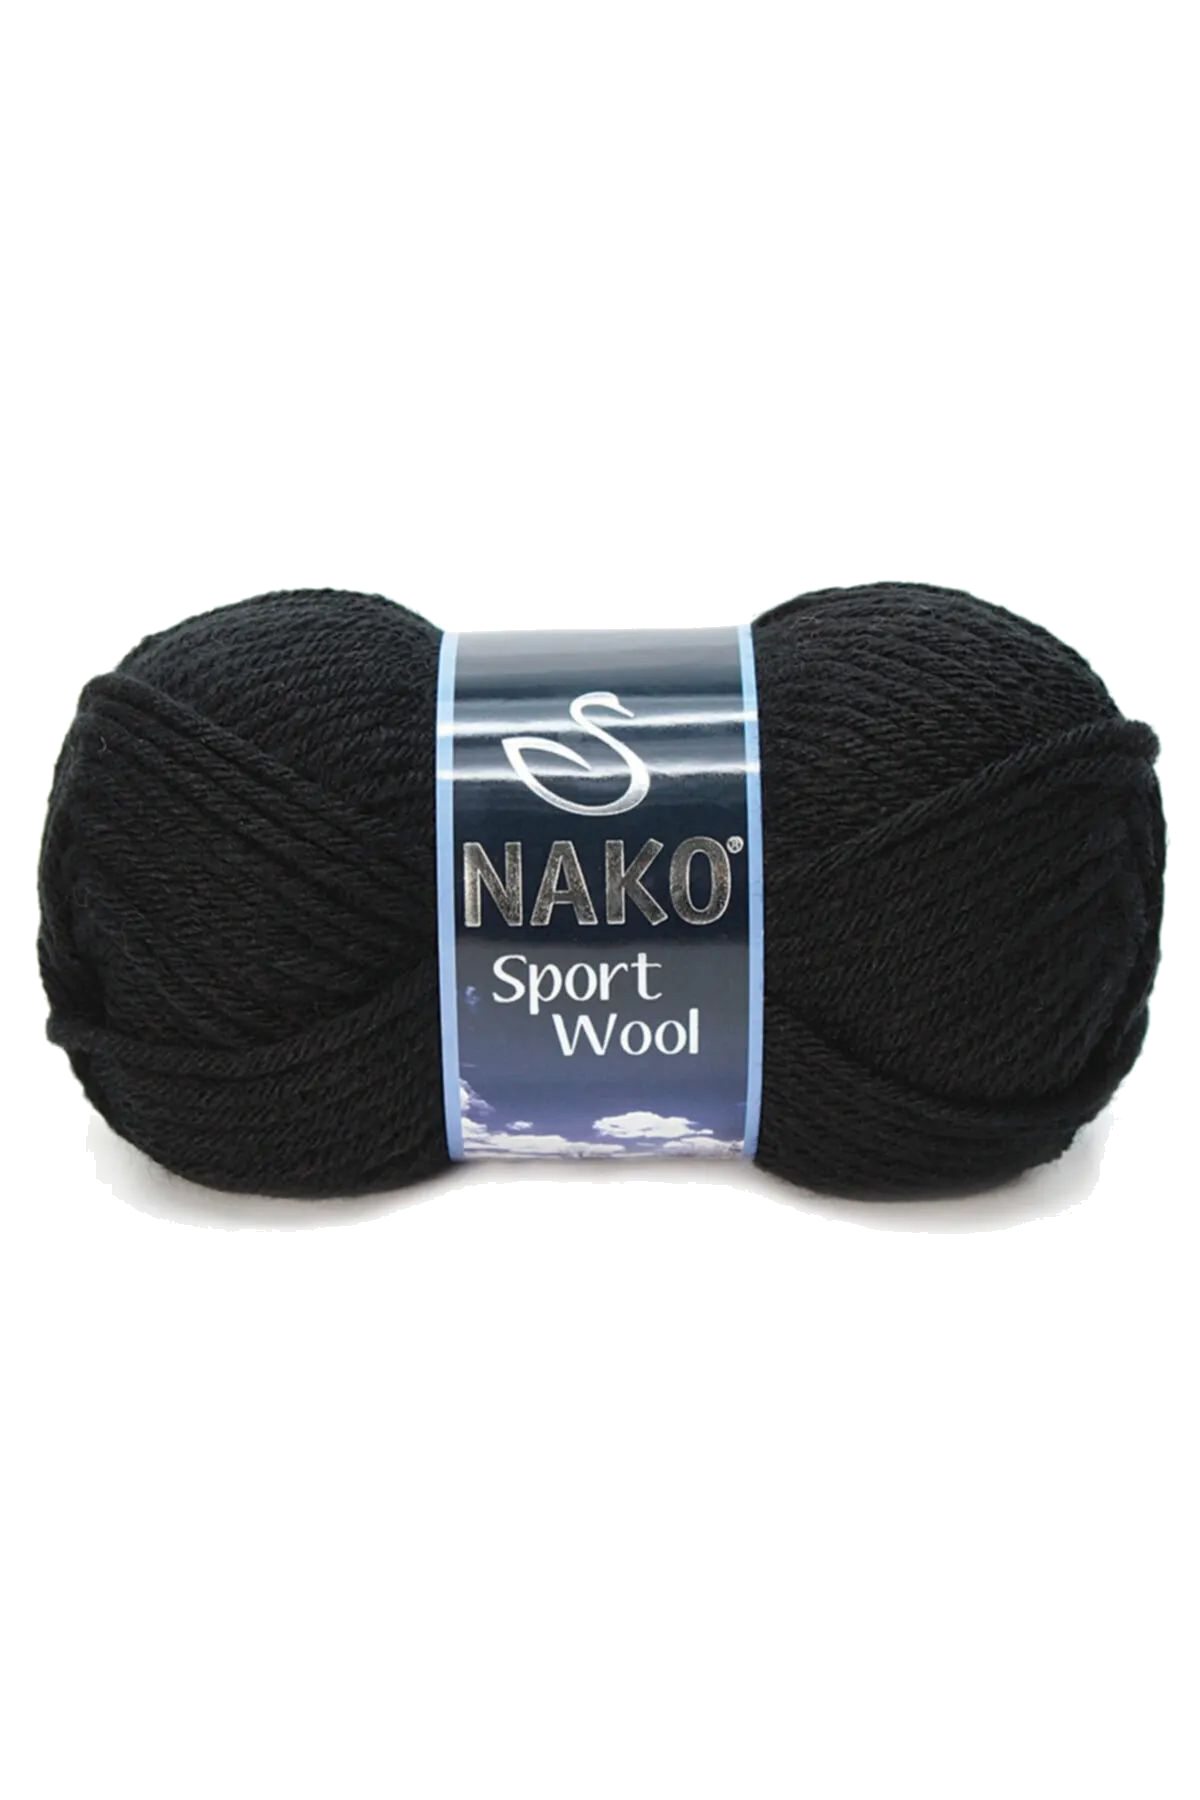 Sport Wool Atkı Bere Ceket Yelek Örgü İpi Yünü No: 217 Siyah